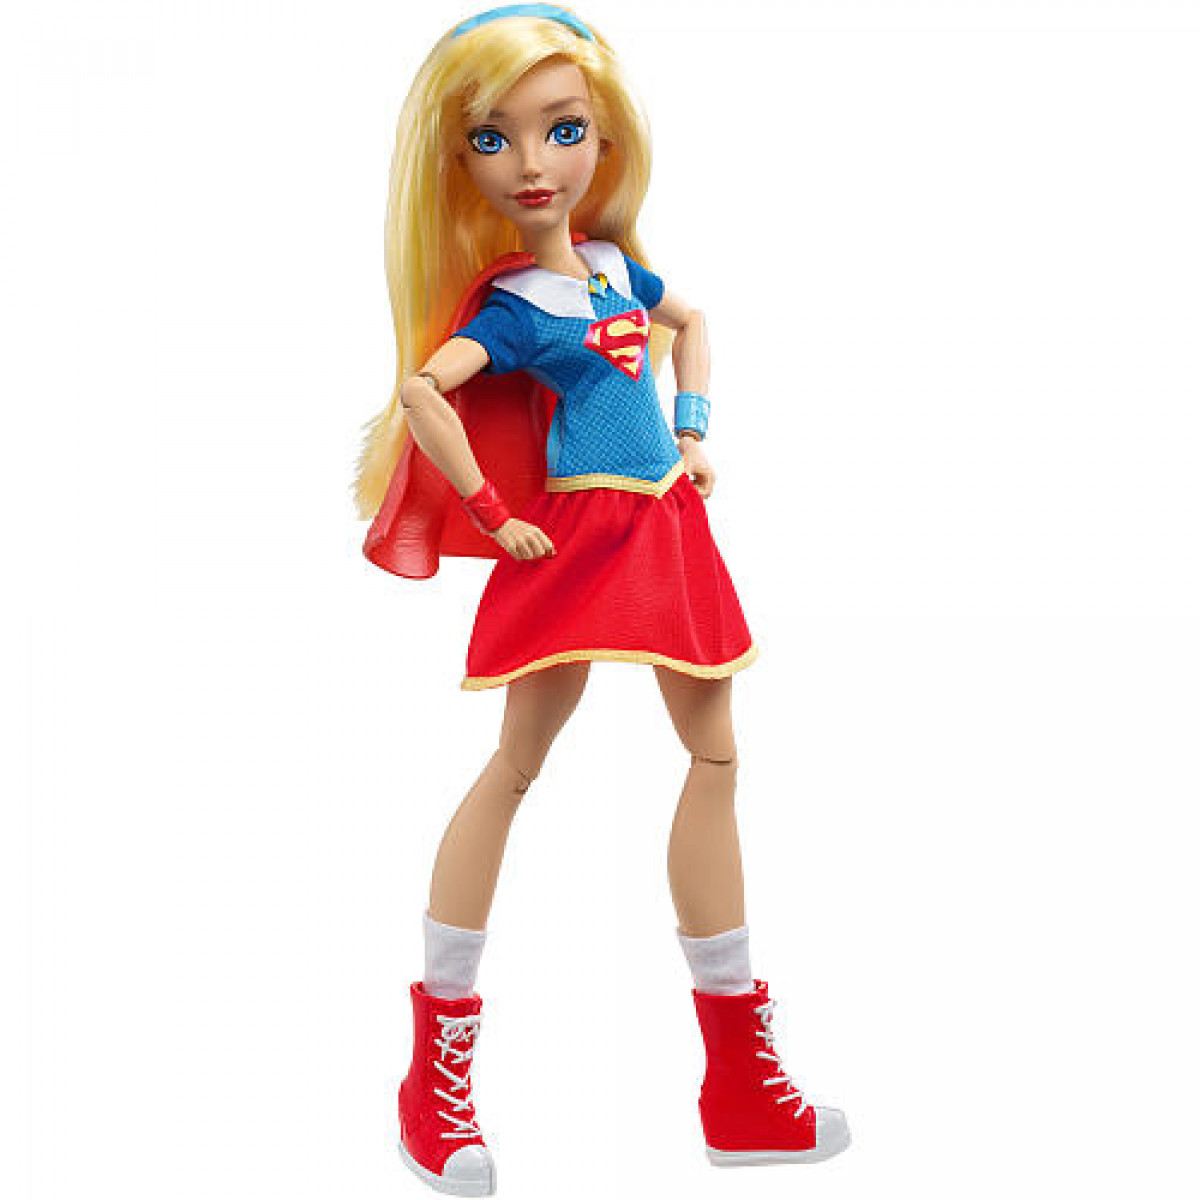 Dc Comics Super Hero Girls 12 Inch Action Figure 1309